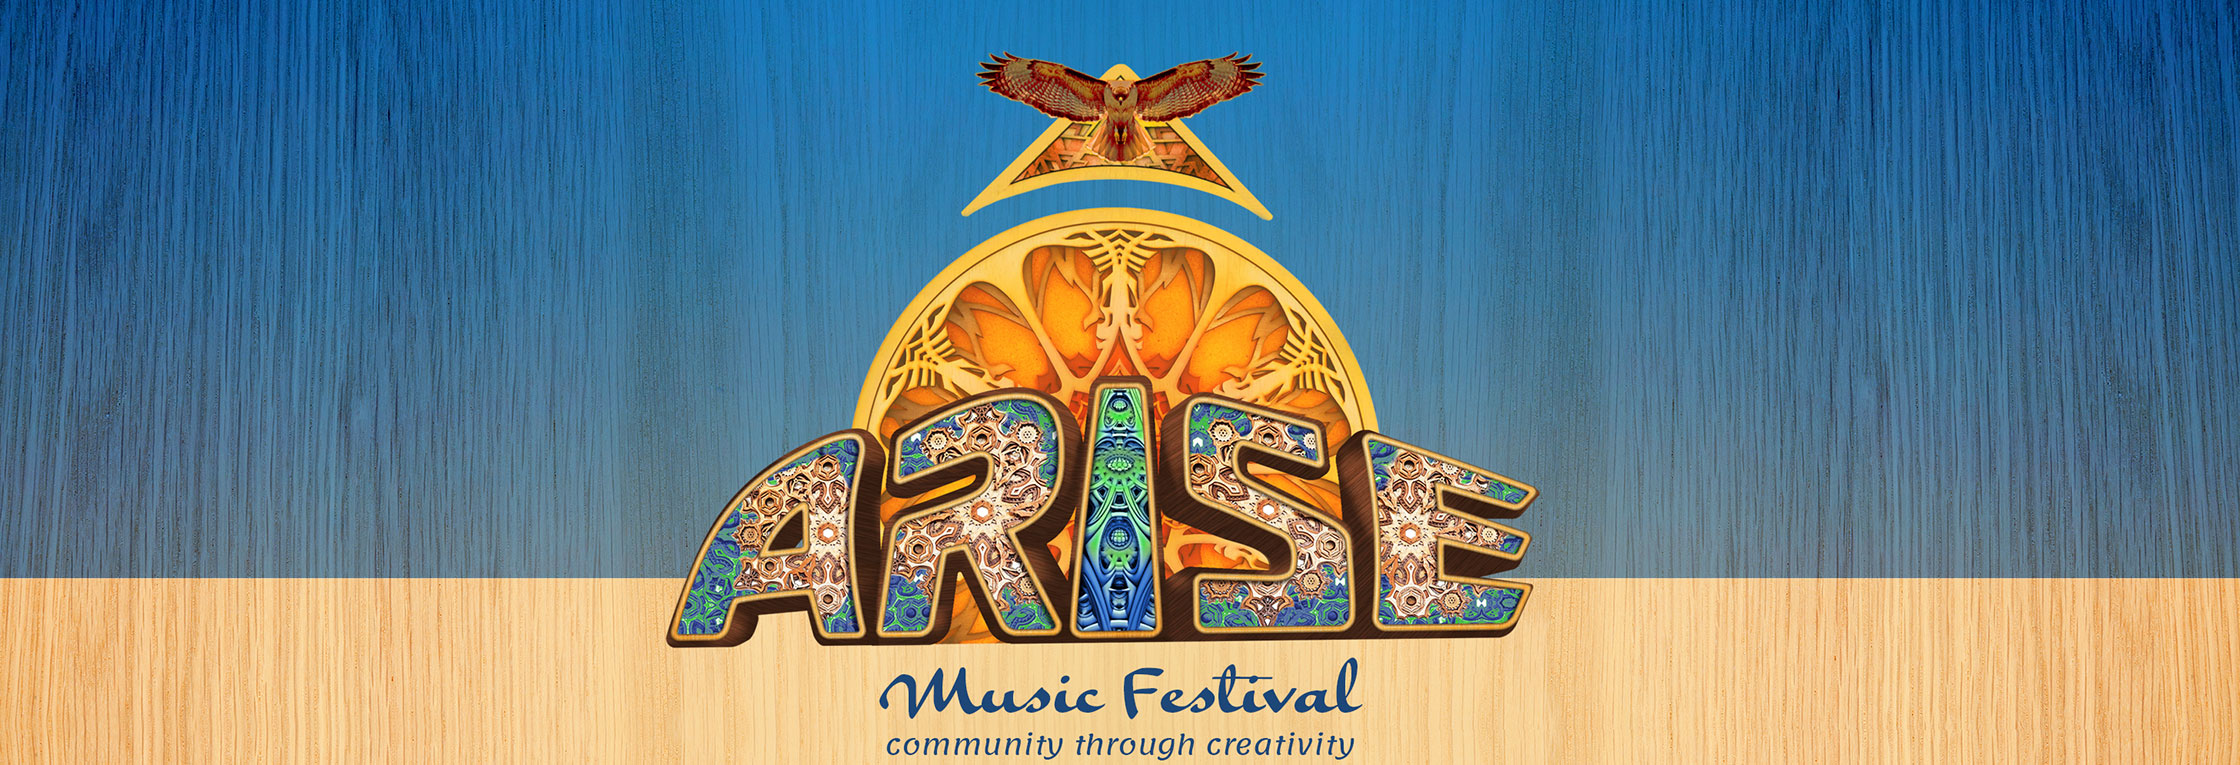 ARISE Music Festival